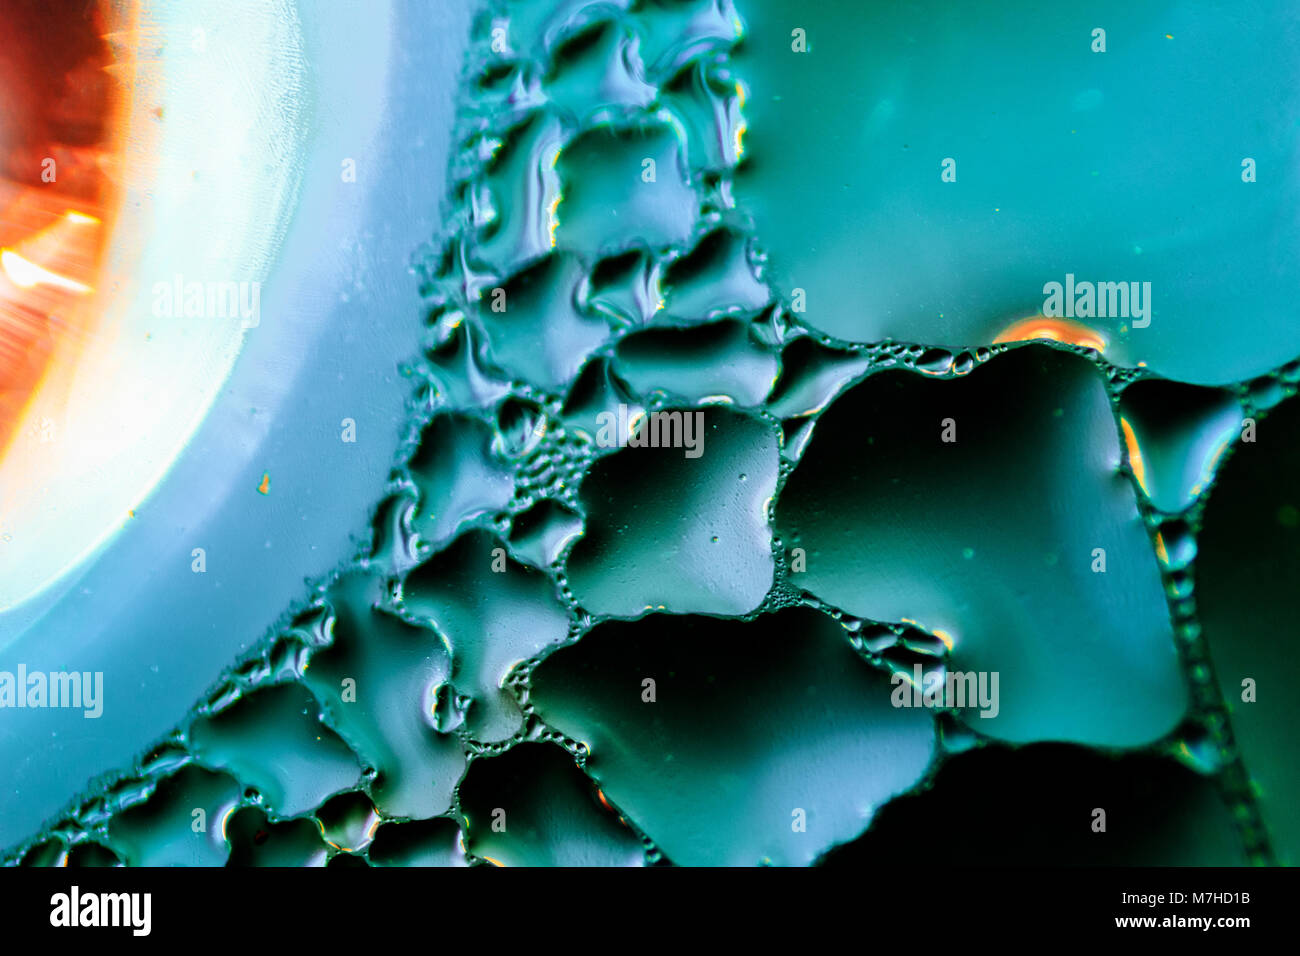 Shot microscopique d'une goutte d'eau de condensation, faite avec de l'eau colorée avec du colorant alimentaire bleu dye. Banque D'Images